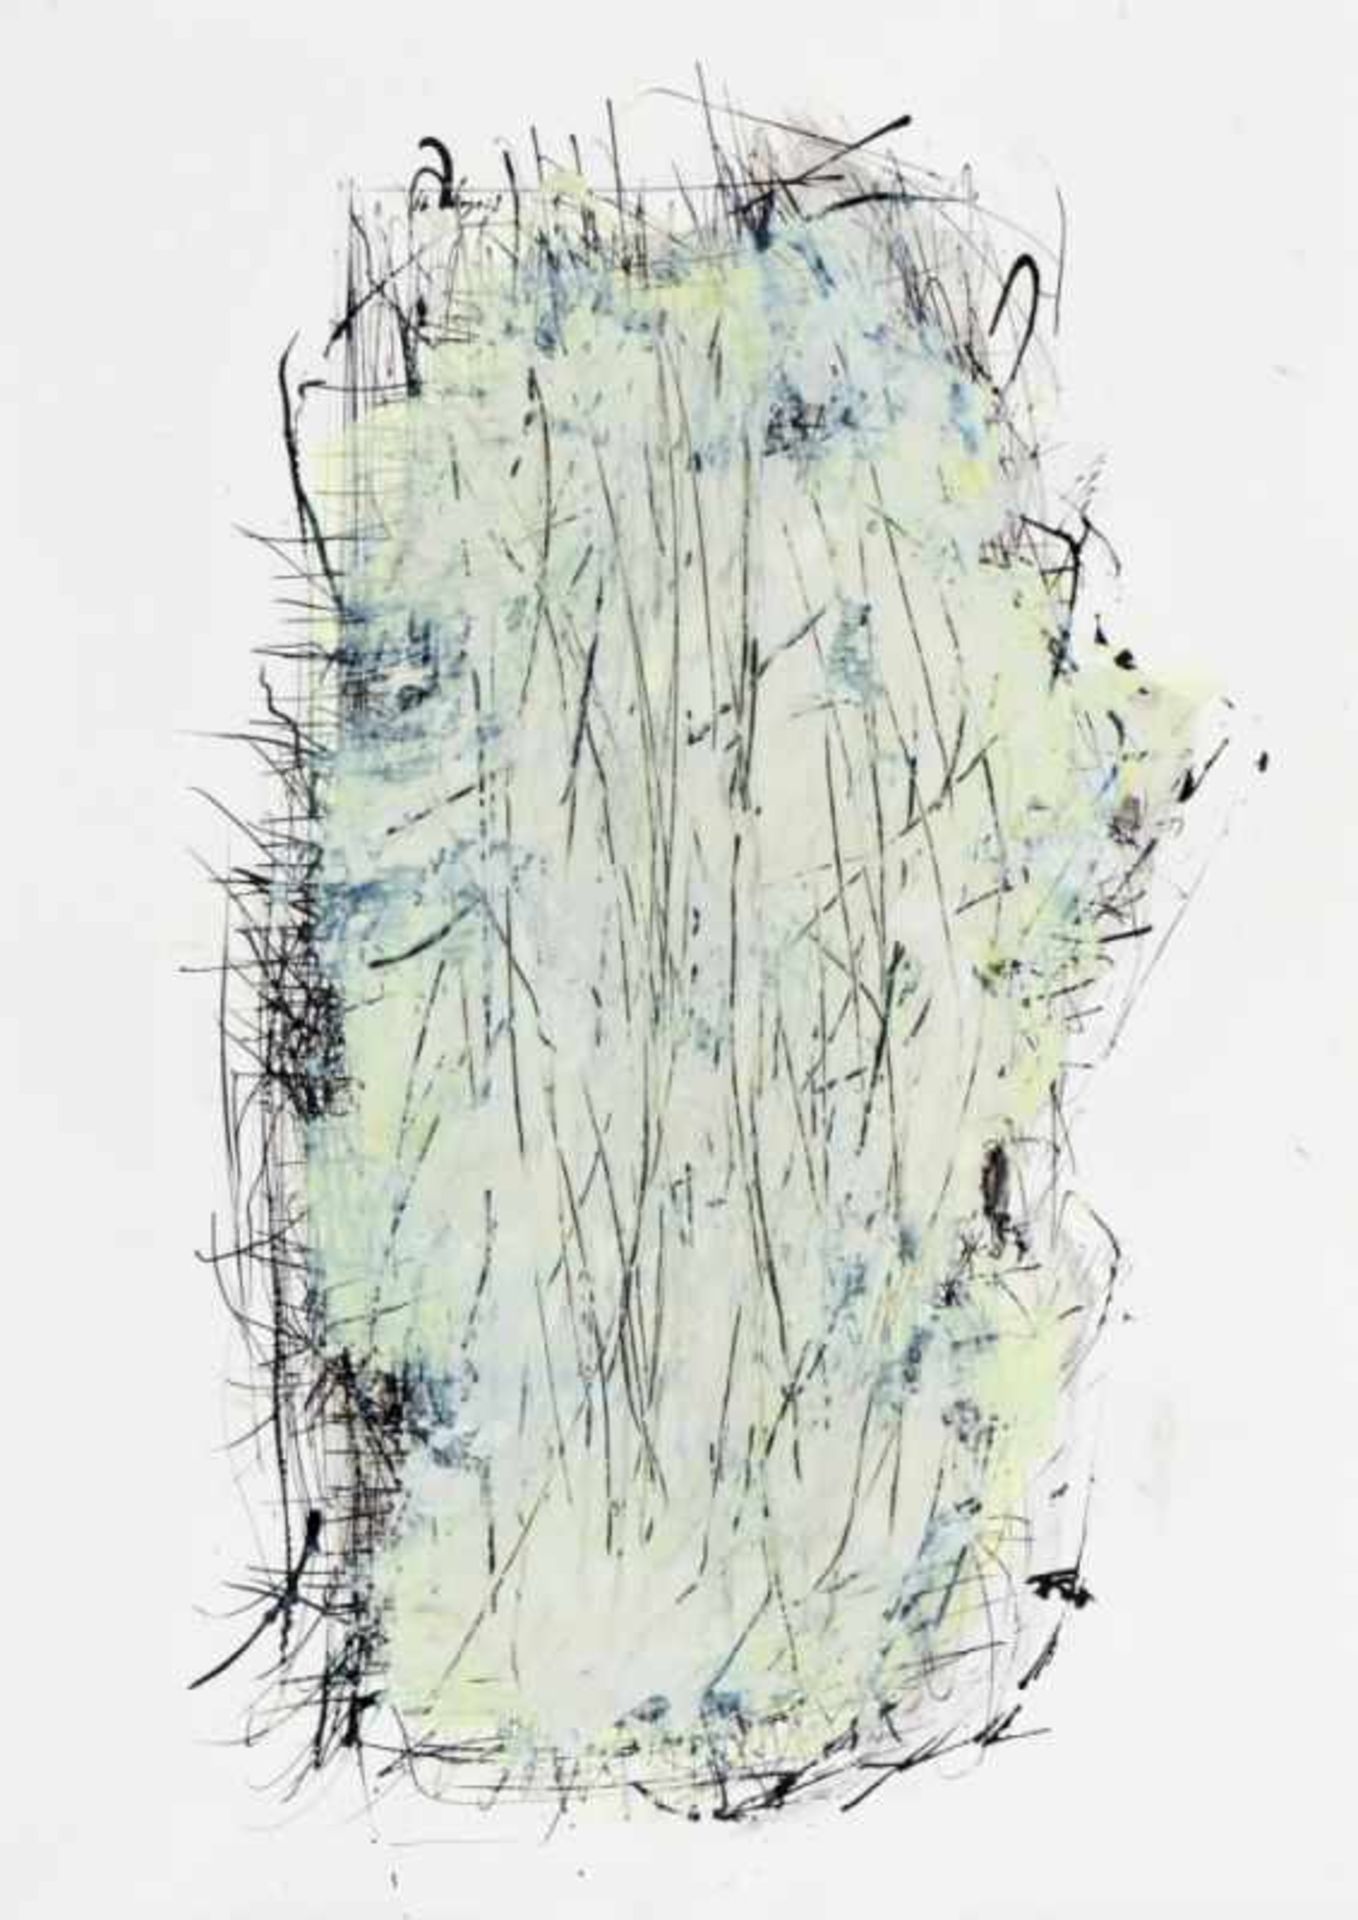 DRAGO PRELOG * (1939 CILLI) Kratzkopf, 1999 Acryl und Tusche auf Papier, 58,8 x 41,9 cm gerahmt, Maß